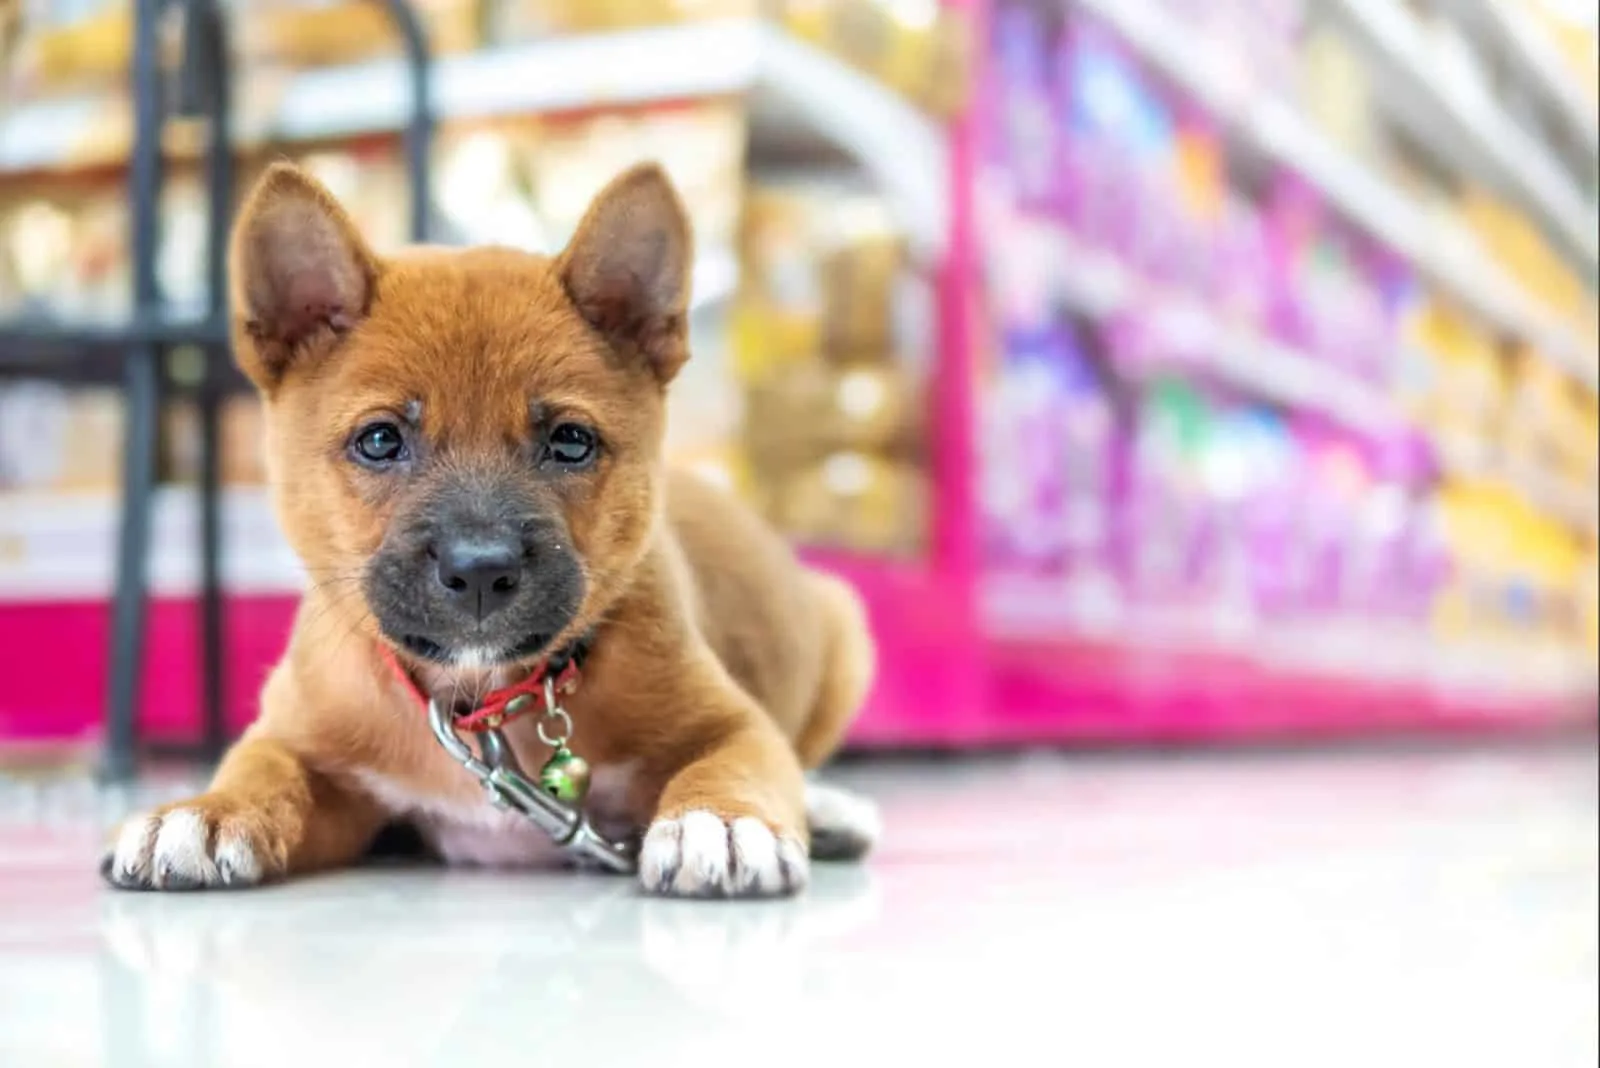 cute dog in a store